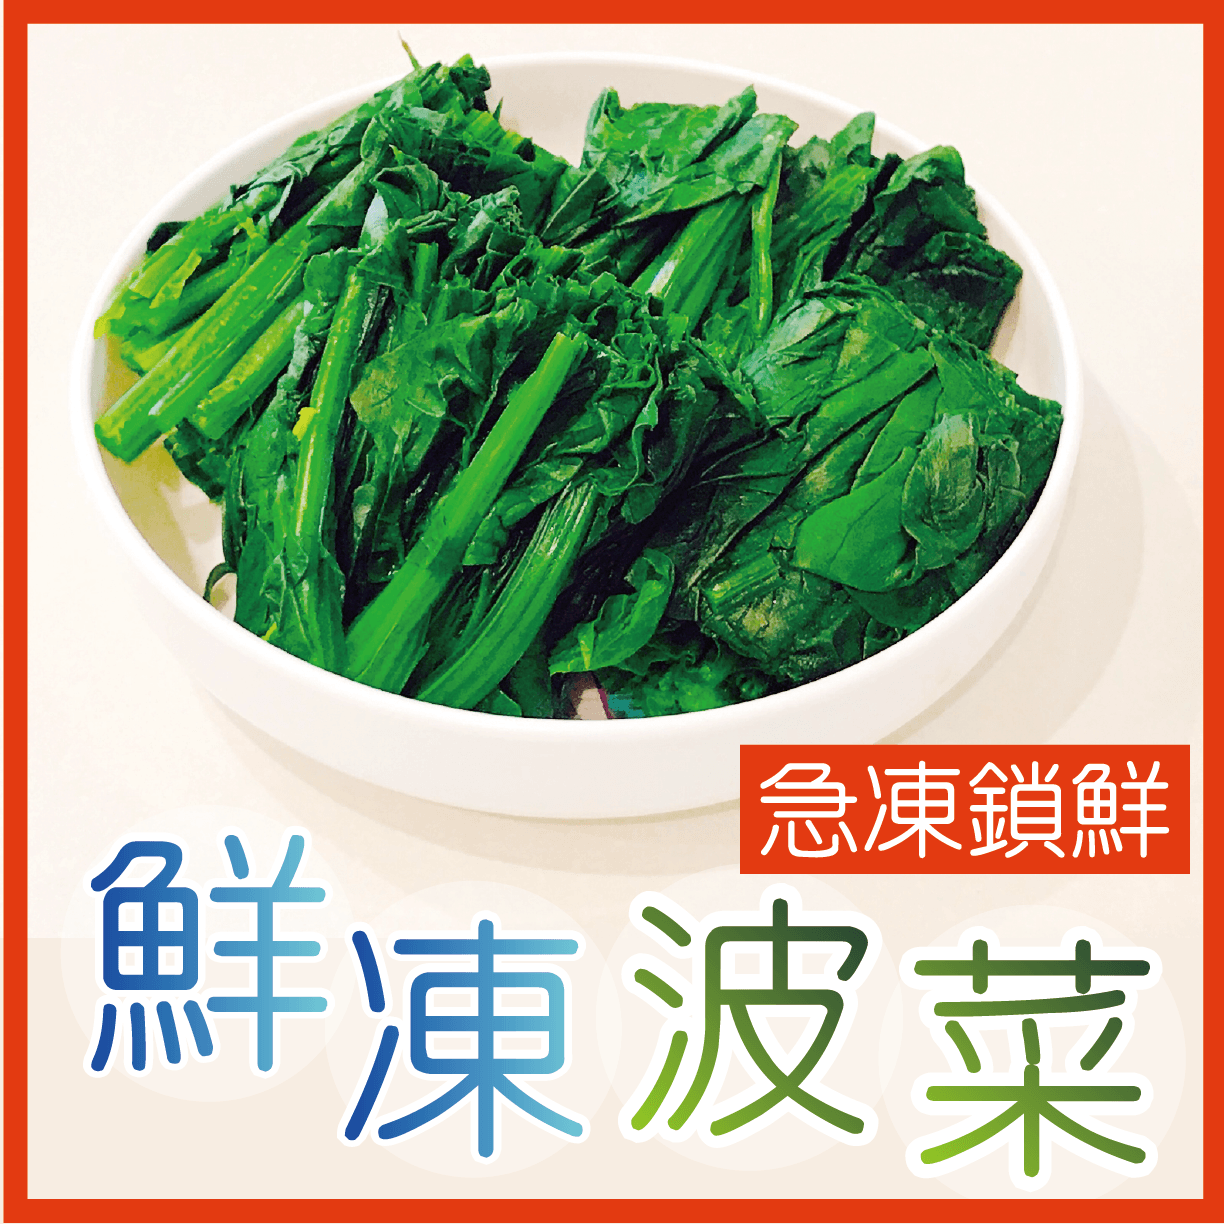 【田食原】新鮮冷凍菠菜450g IQF急速冷凍 快速調理 好吃方便 養生健康 減醣健身 低熱量 團購美食